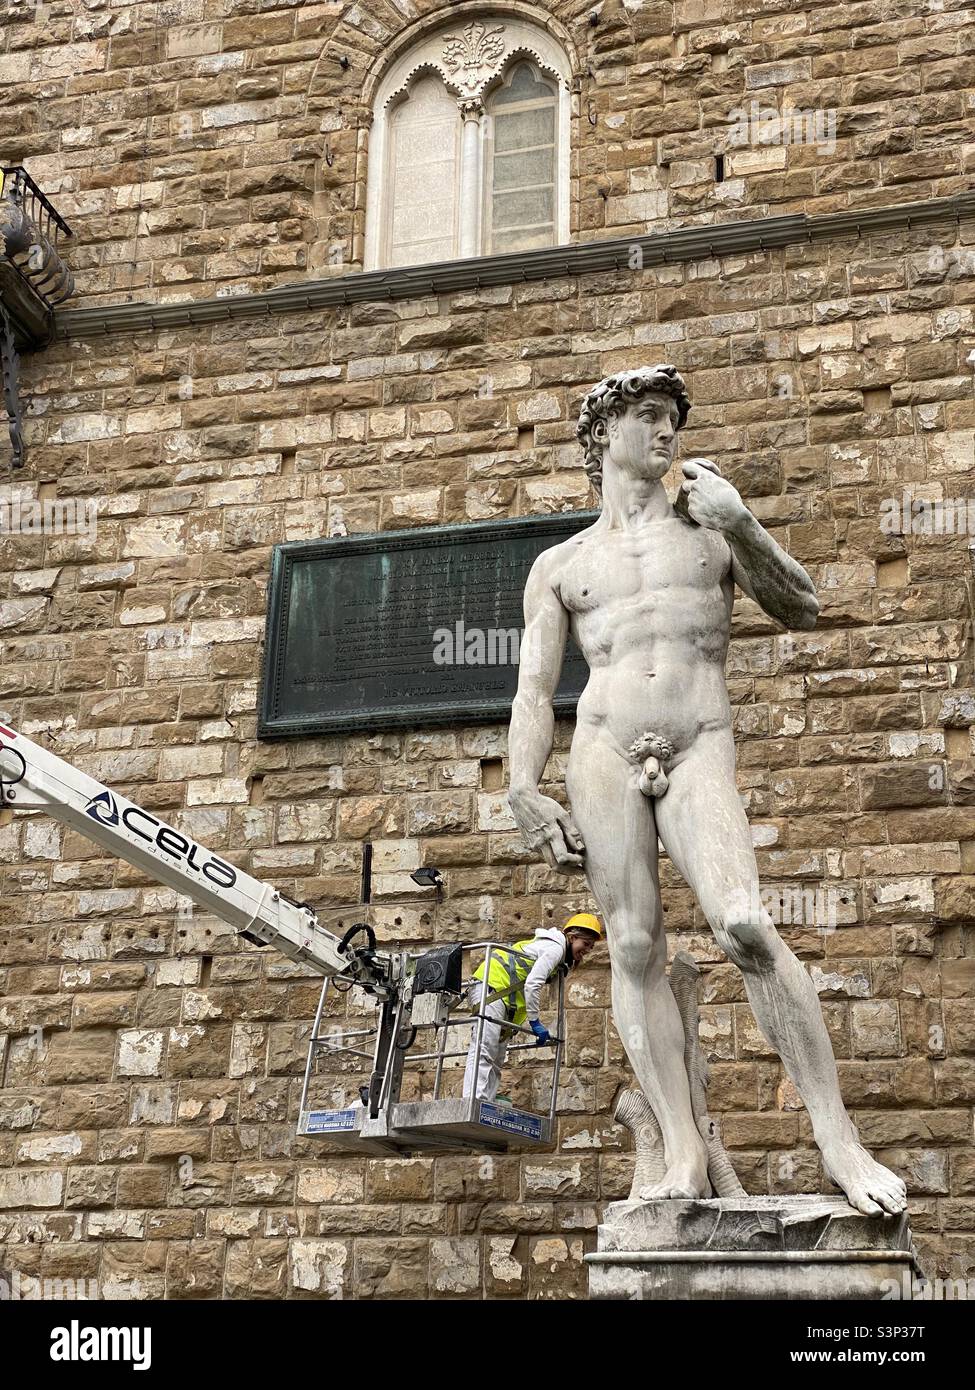 David Michelangelo piazza fella Signoria Palazzo Vecchio. Worker in a crane cleaner Stock Photo